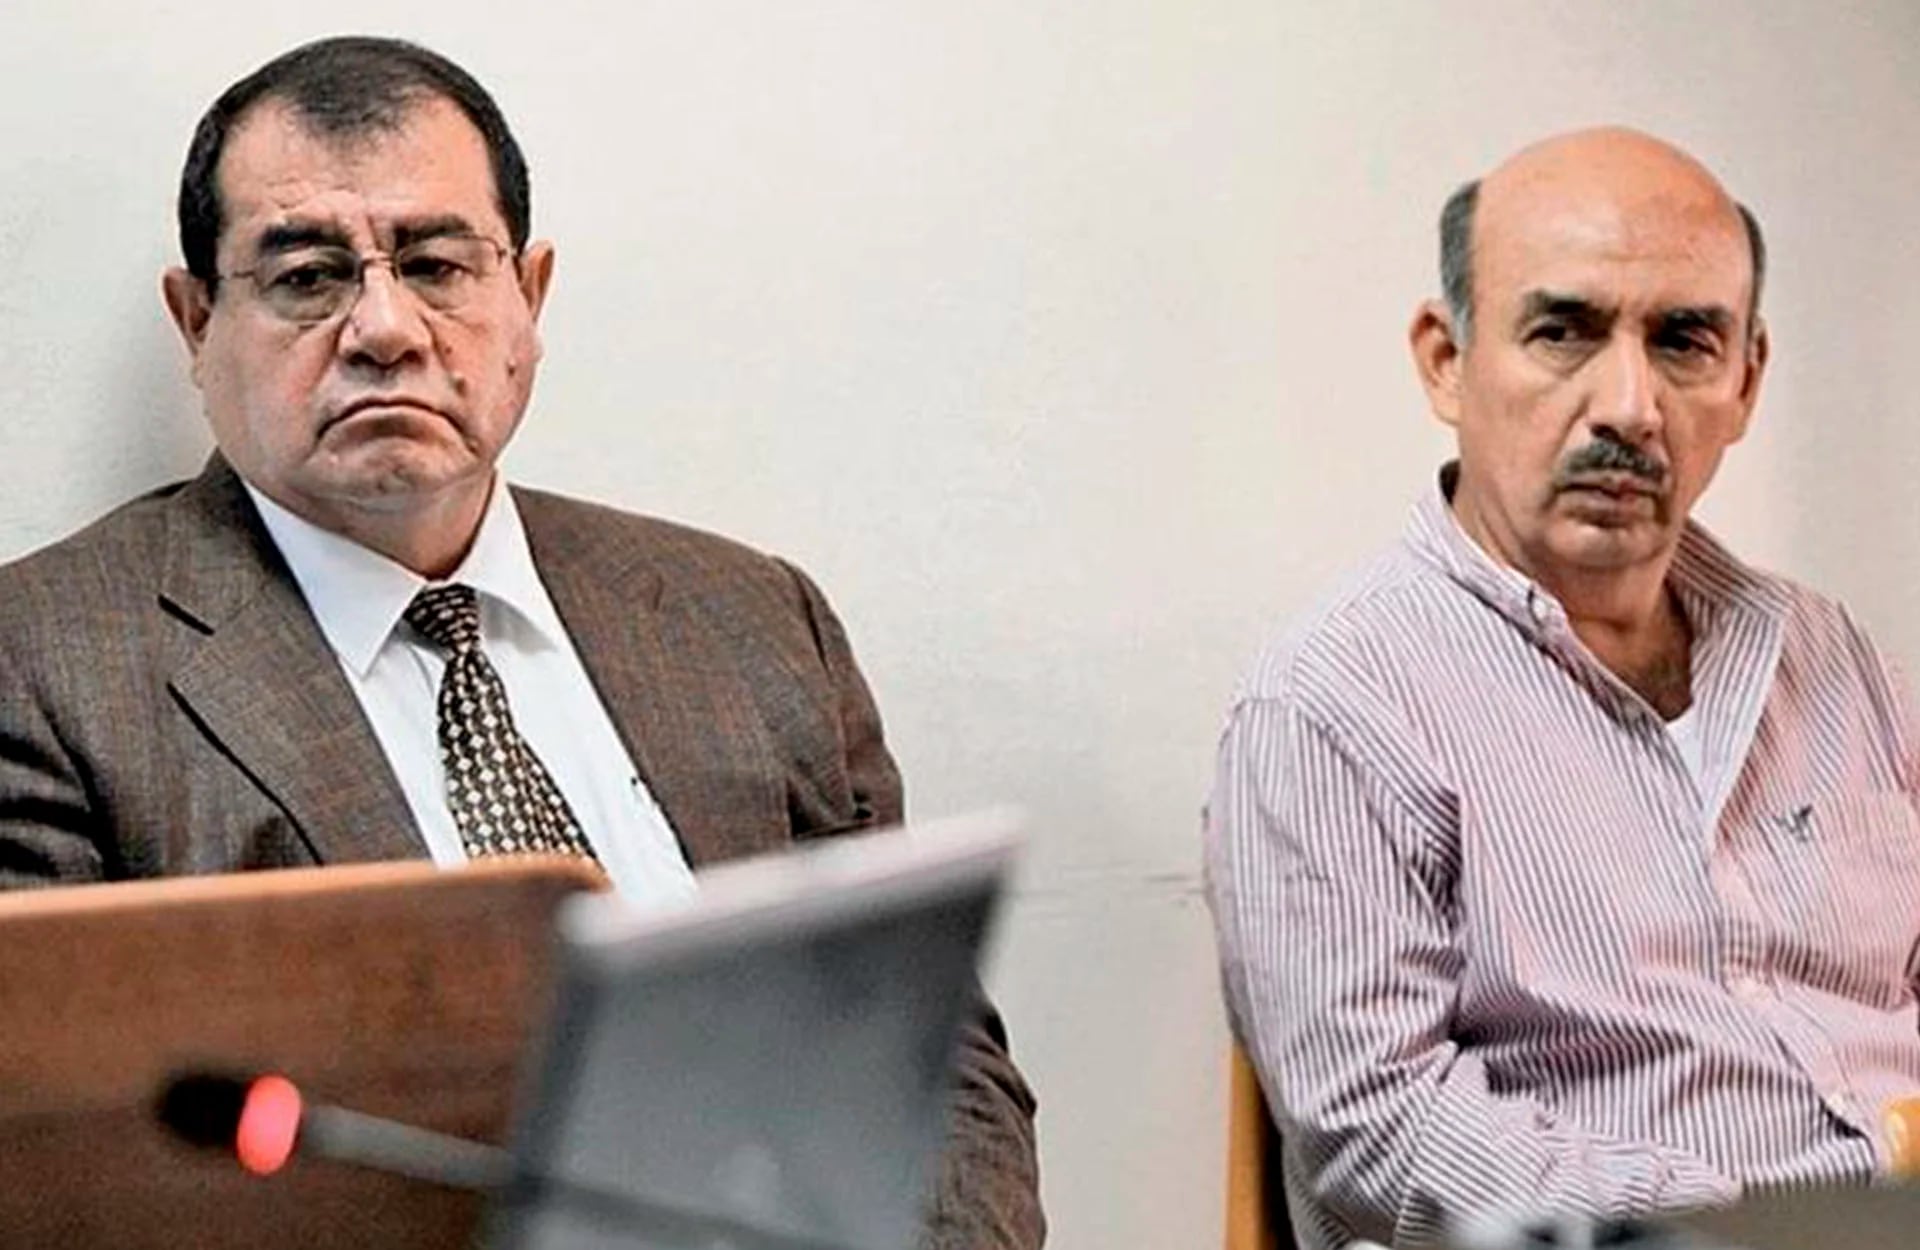 Napoléon Rojas Méndez y Jacobo Salán Sánchez (Foto Prensa Libre)